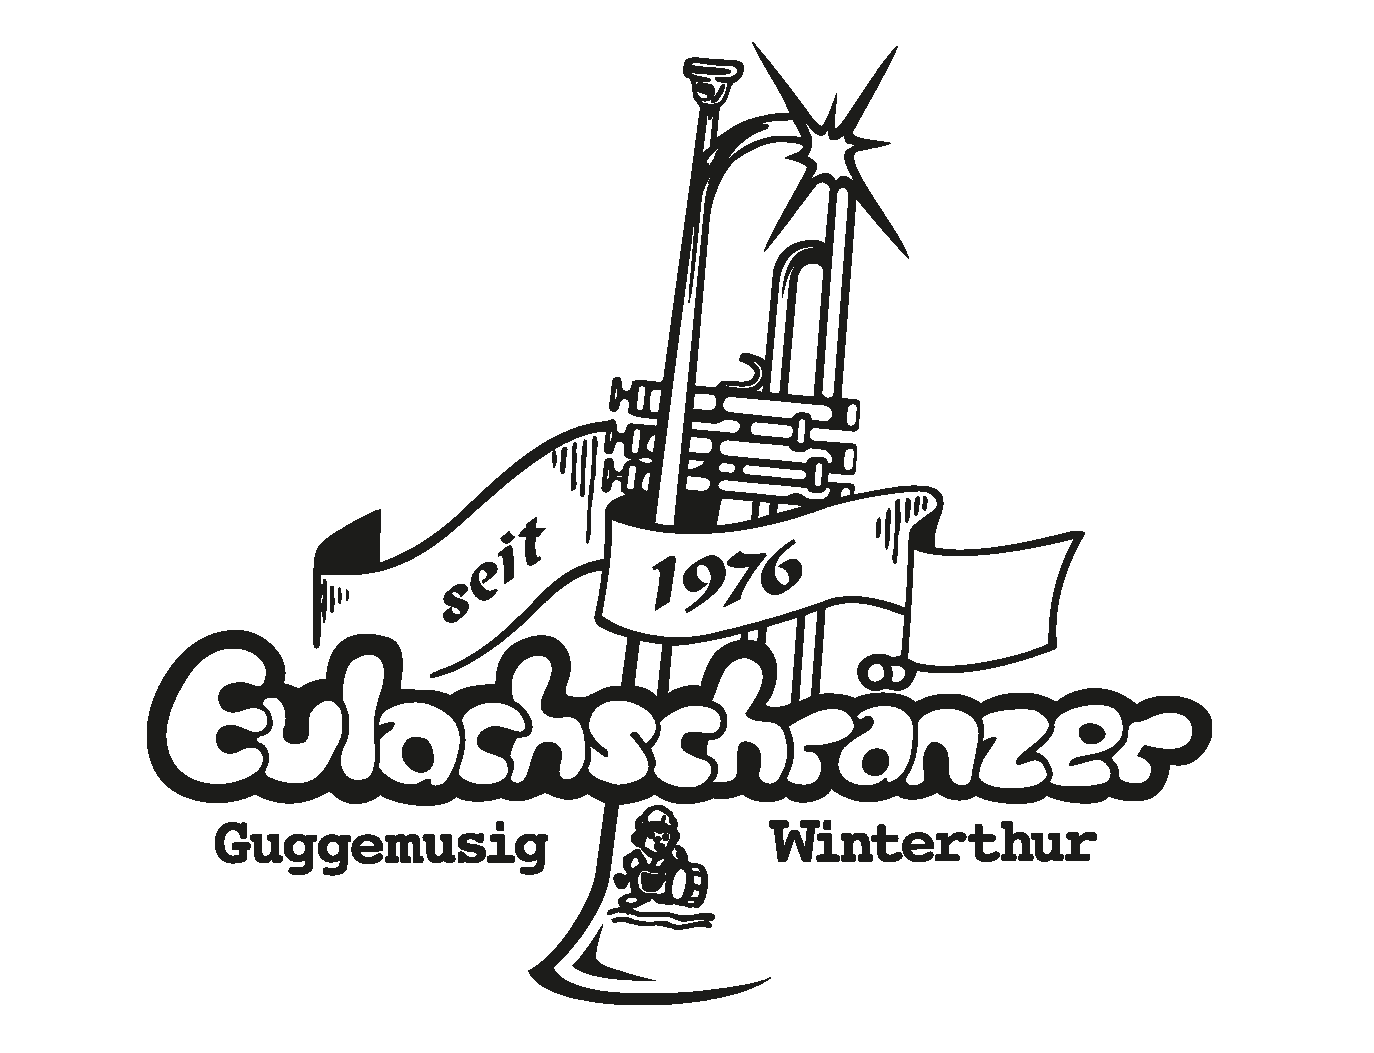 (c) Eulachschraenzer.ch